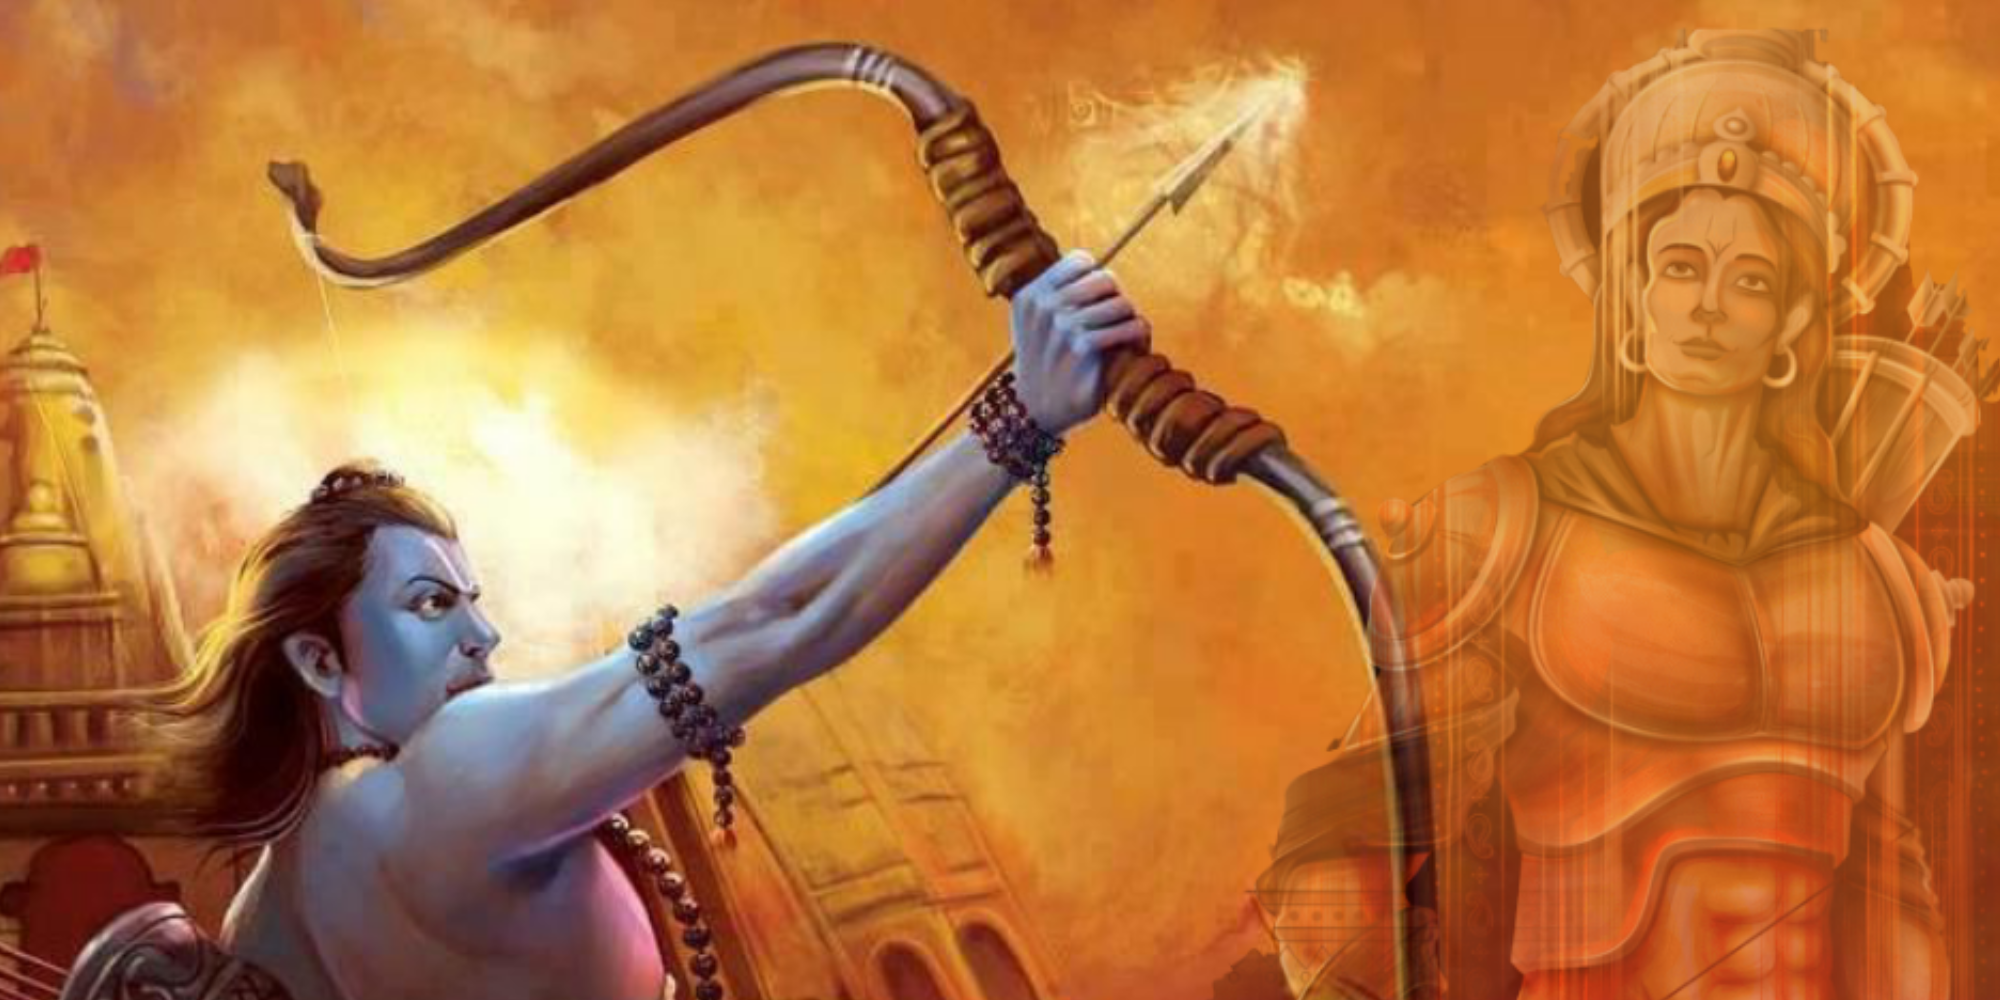 Ramayana Yatra: A Spiritual Journey Through the Epic of Ramayana